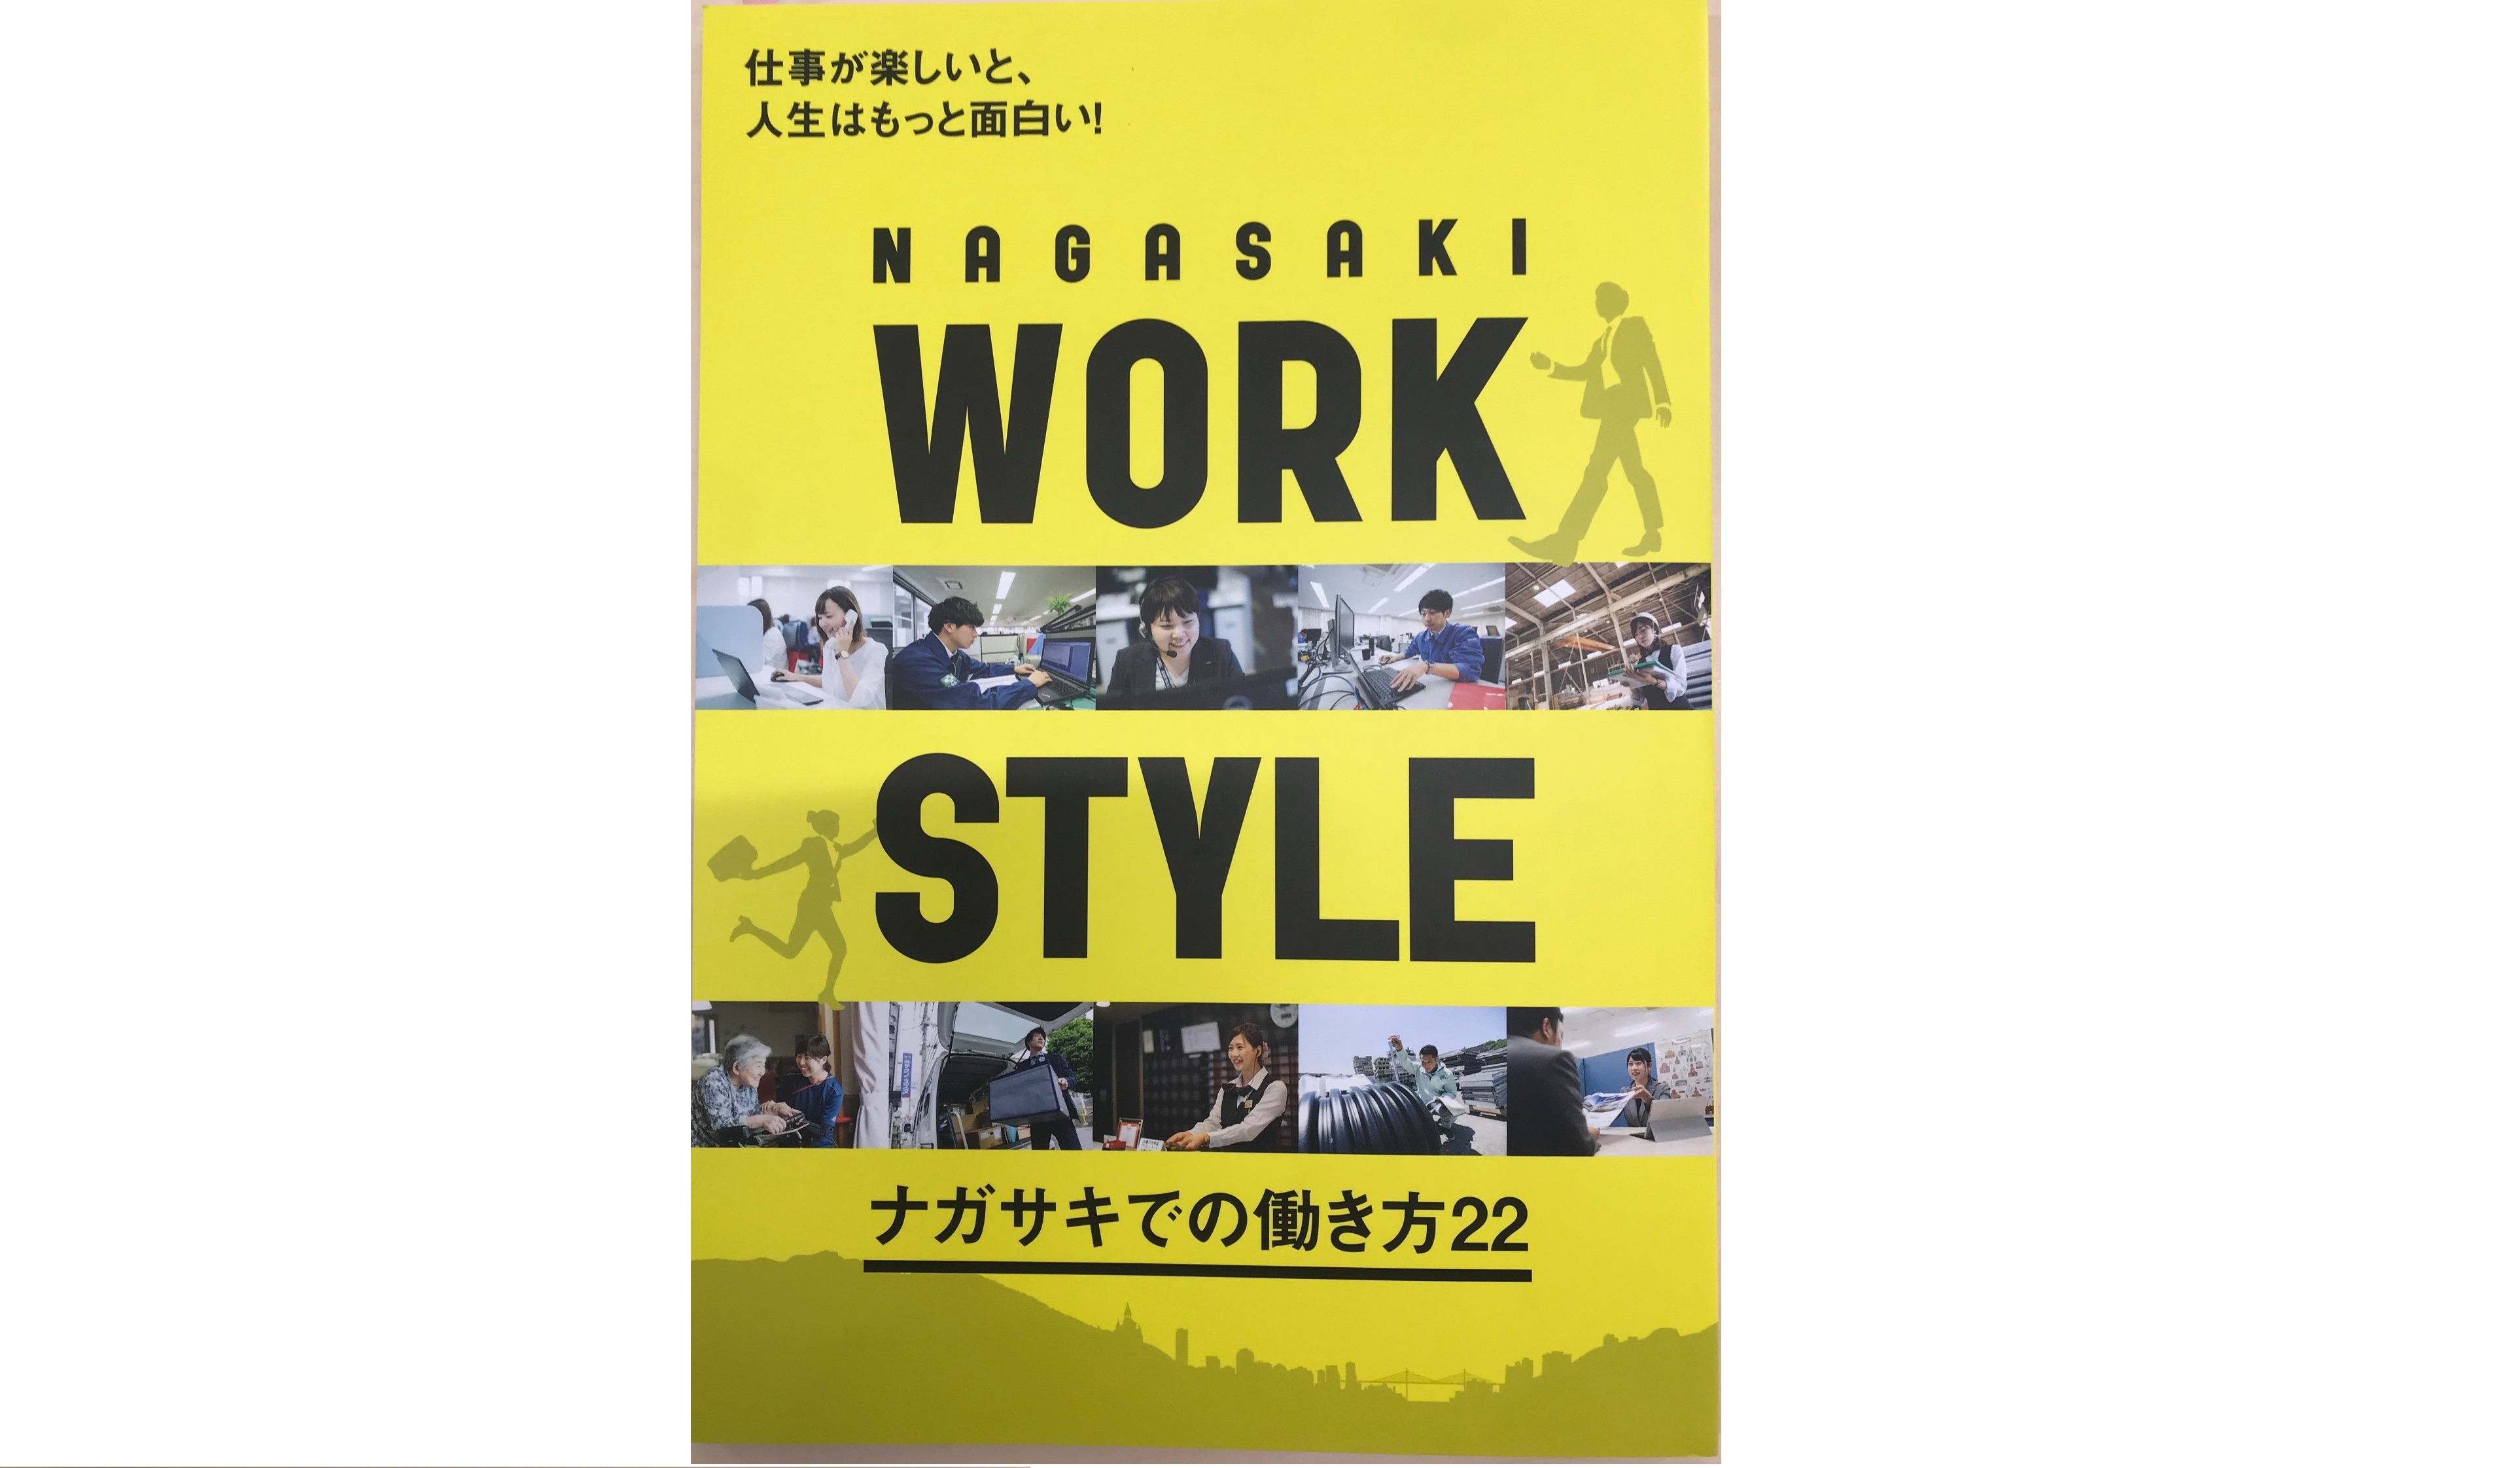 長崎文献社発刊『NAGASAKI WORK STYLE』